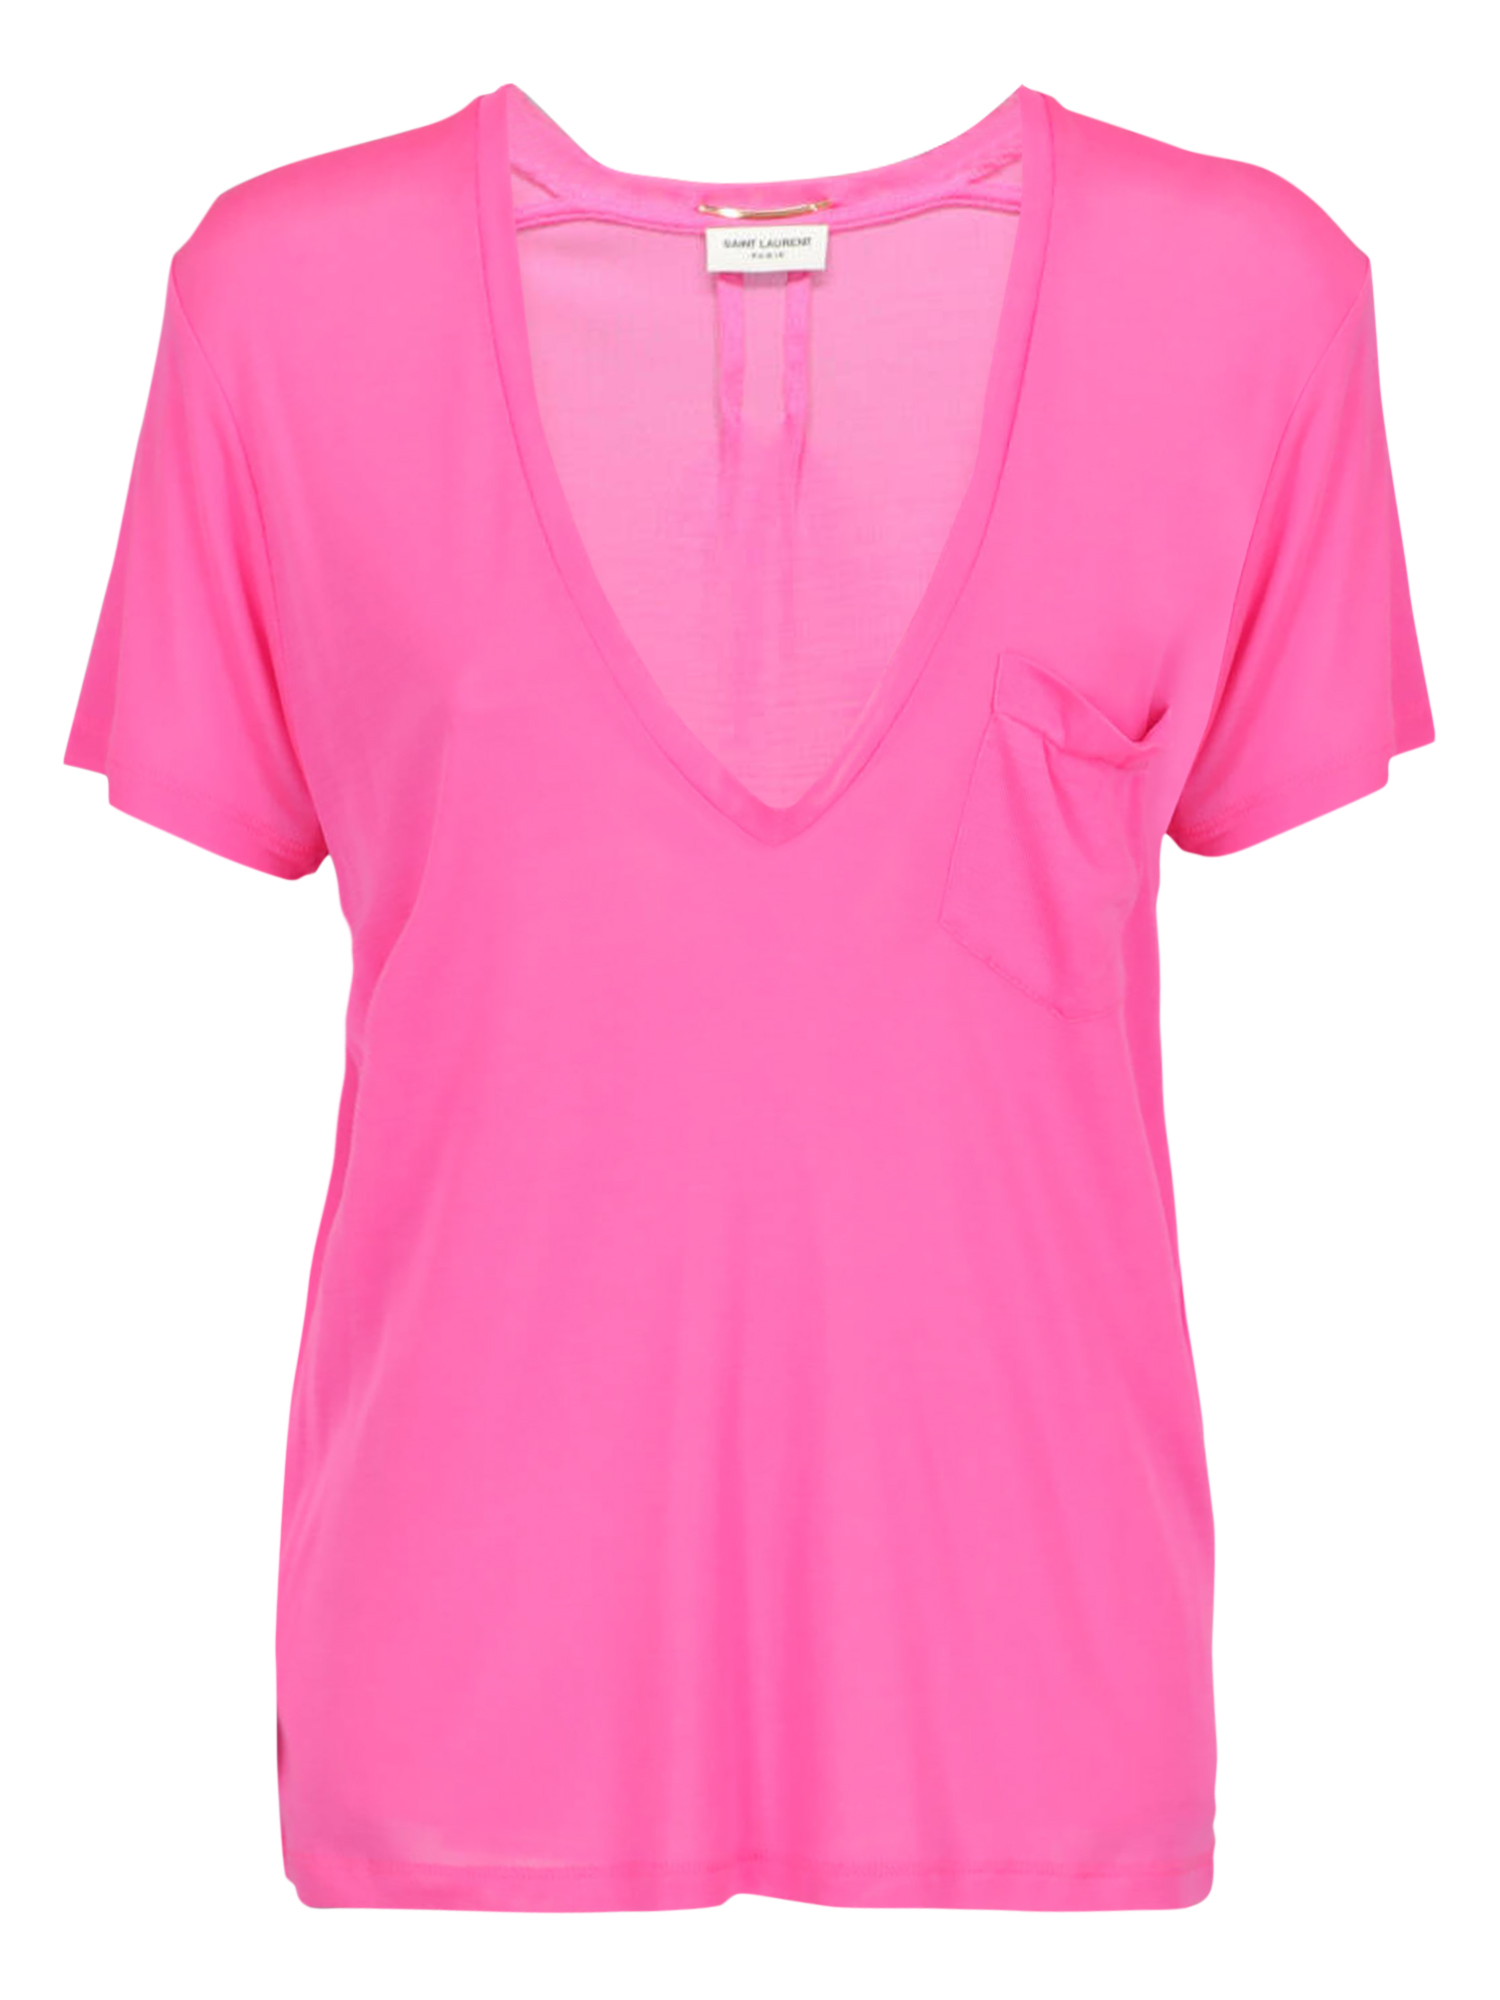 T-shirts Et Tops Pour Femme - Saint Laurent - En Silk Pink - Taille:  -